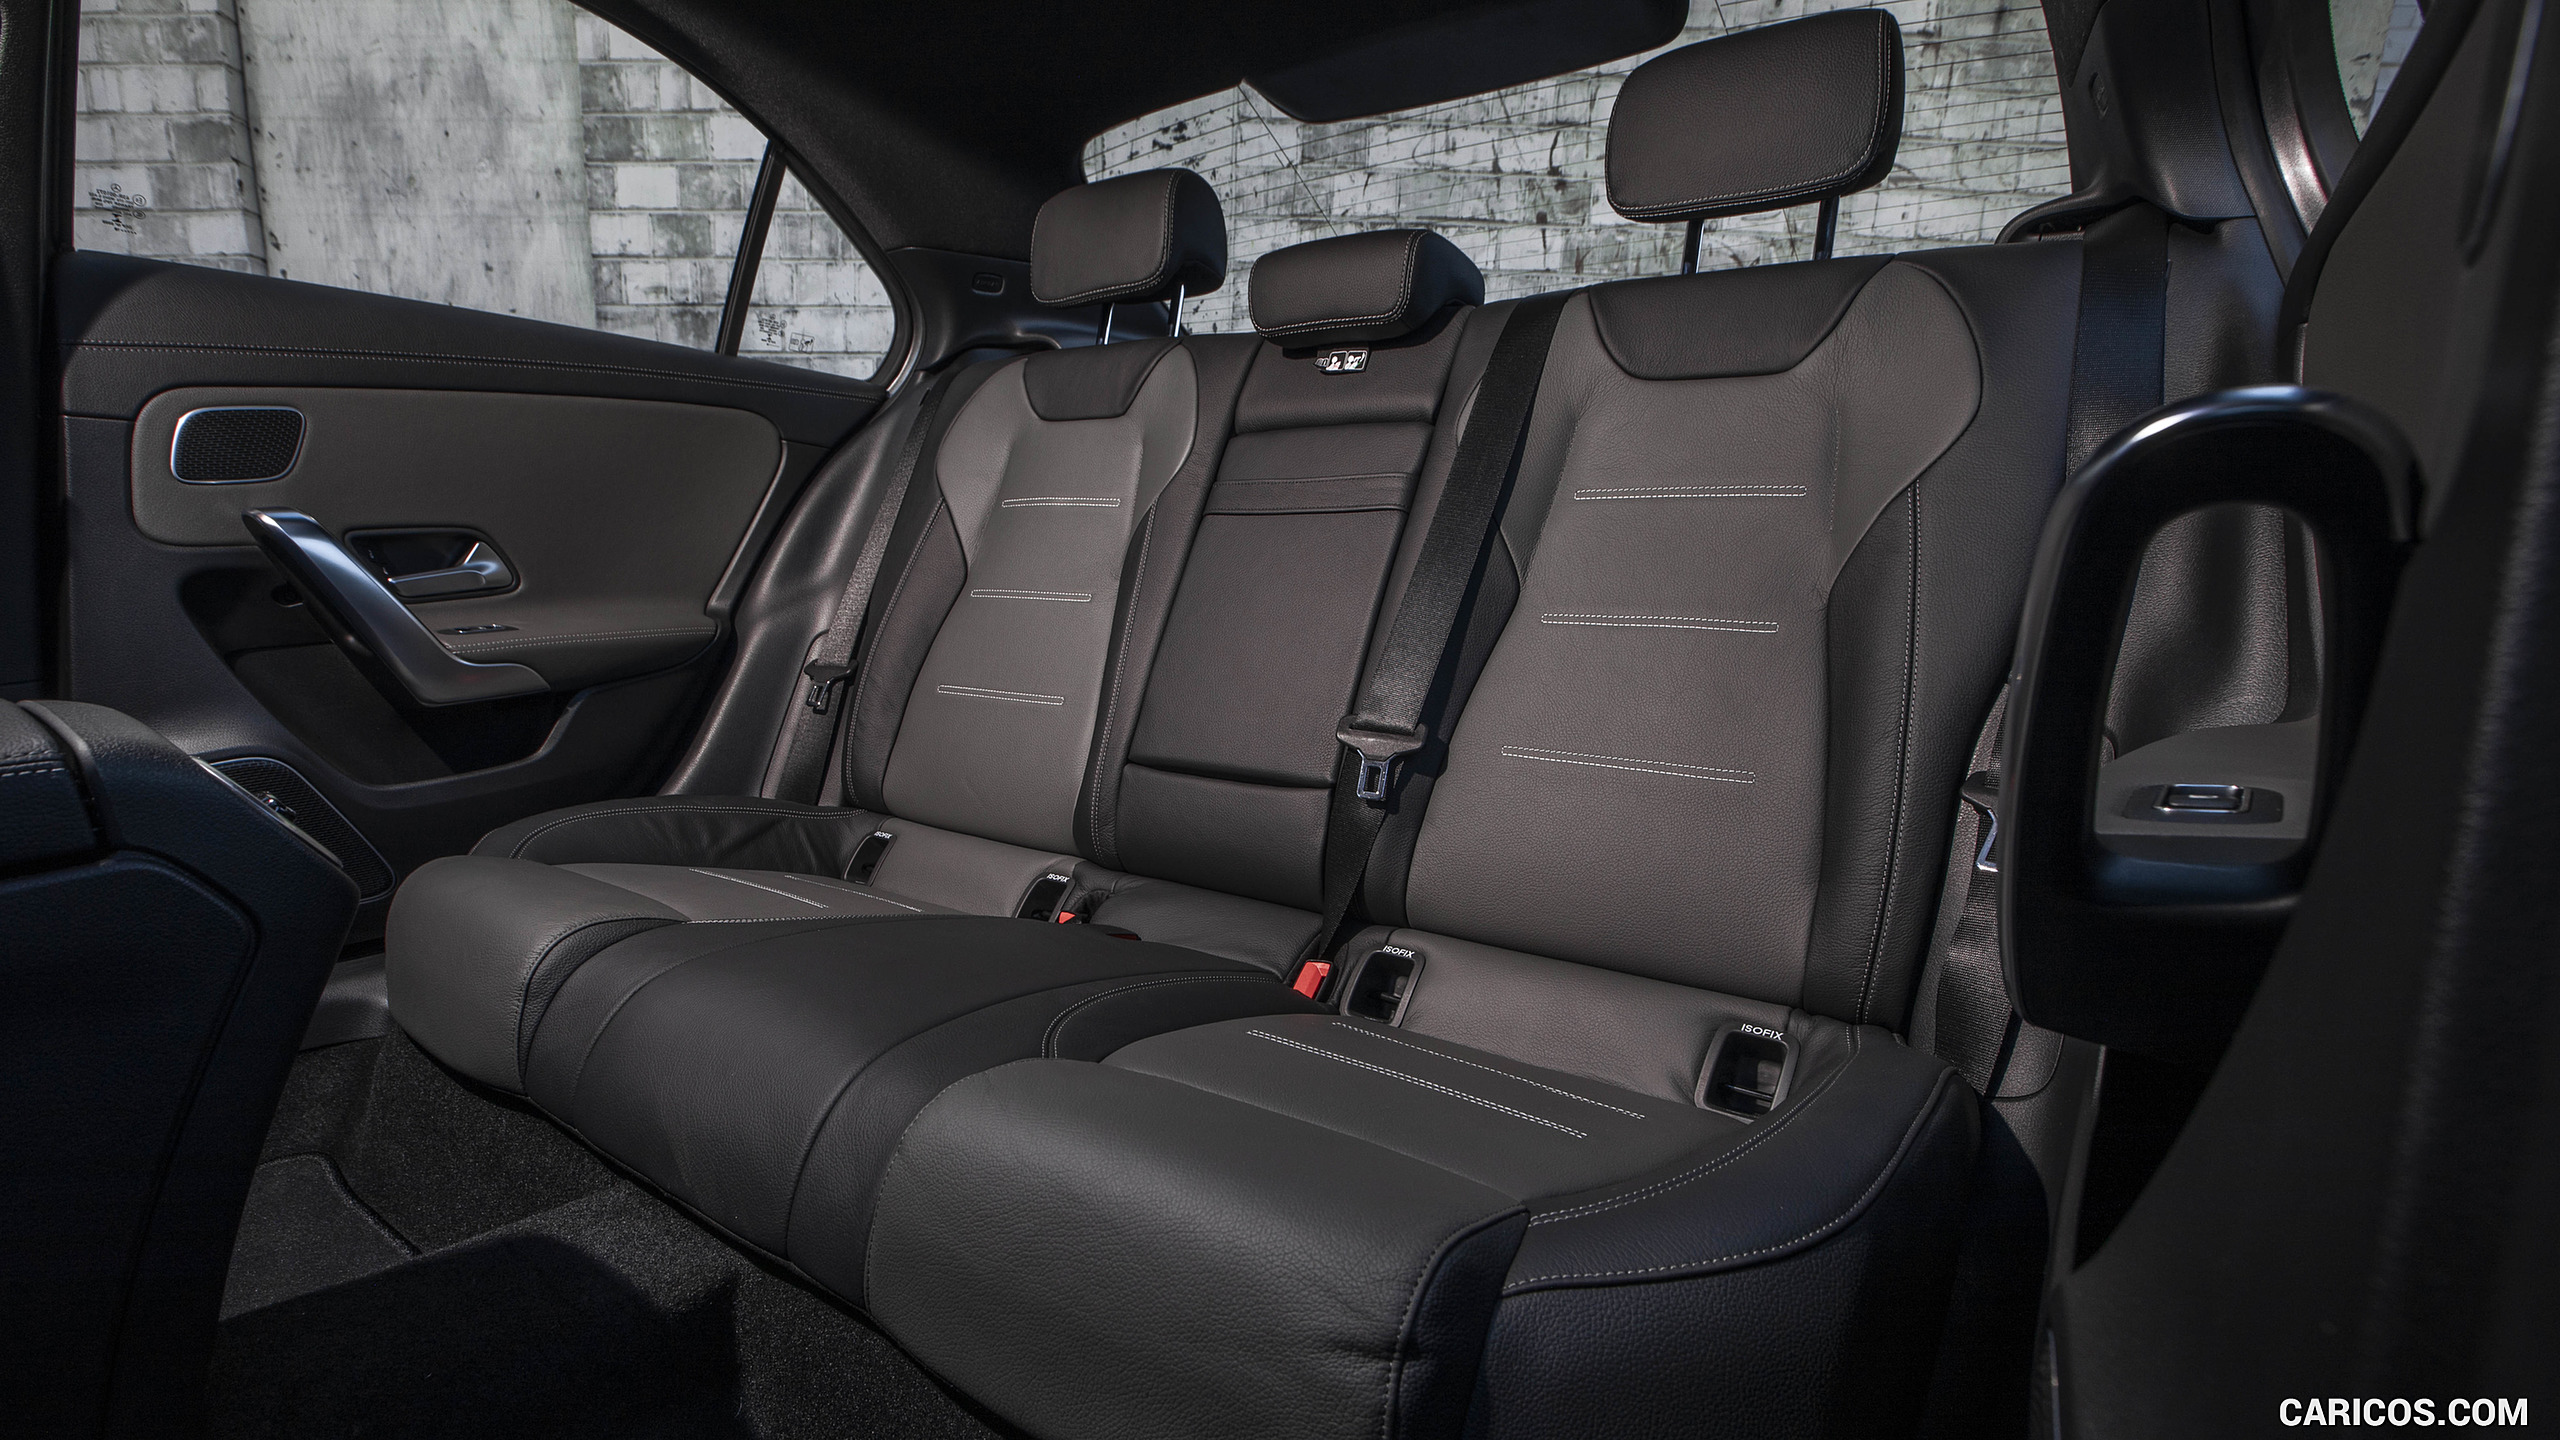 2019 Mercedes-Benz A-Class Sedan (US-Spec) - Interior, Rear Seats, #148 of 214